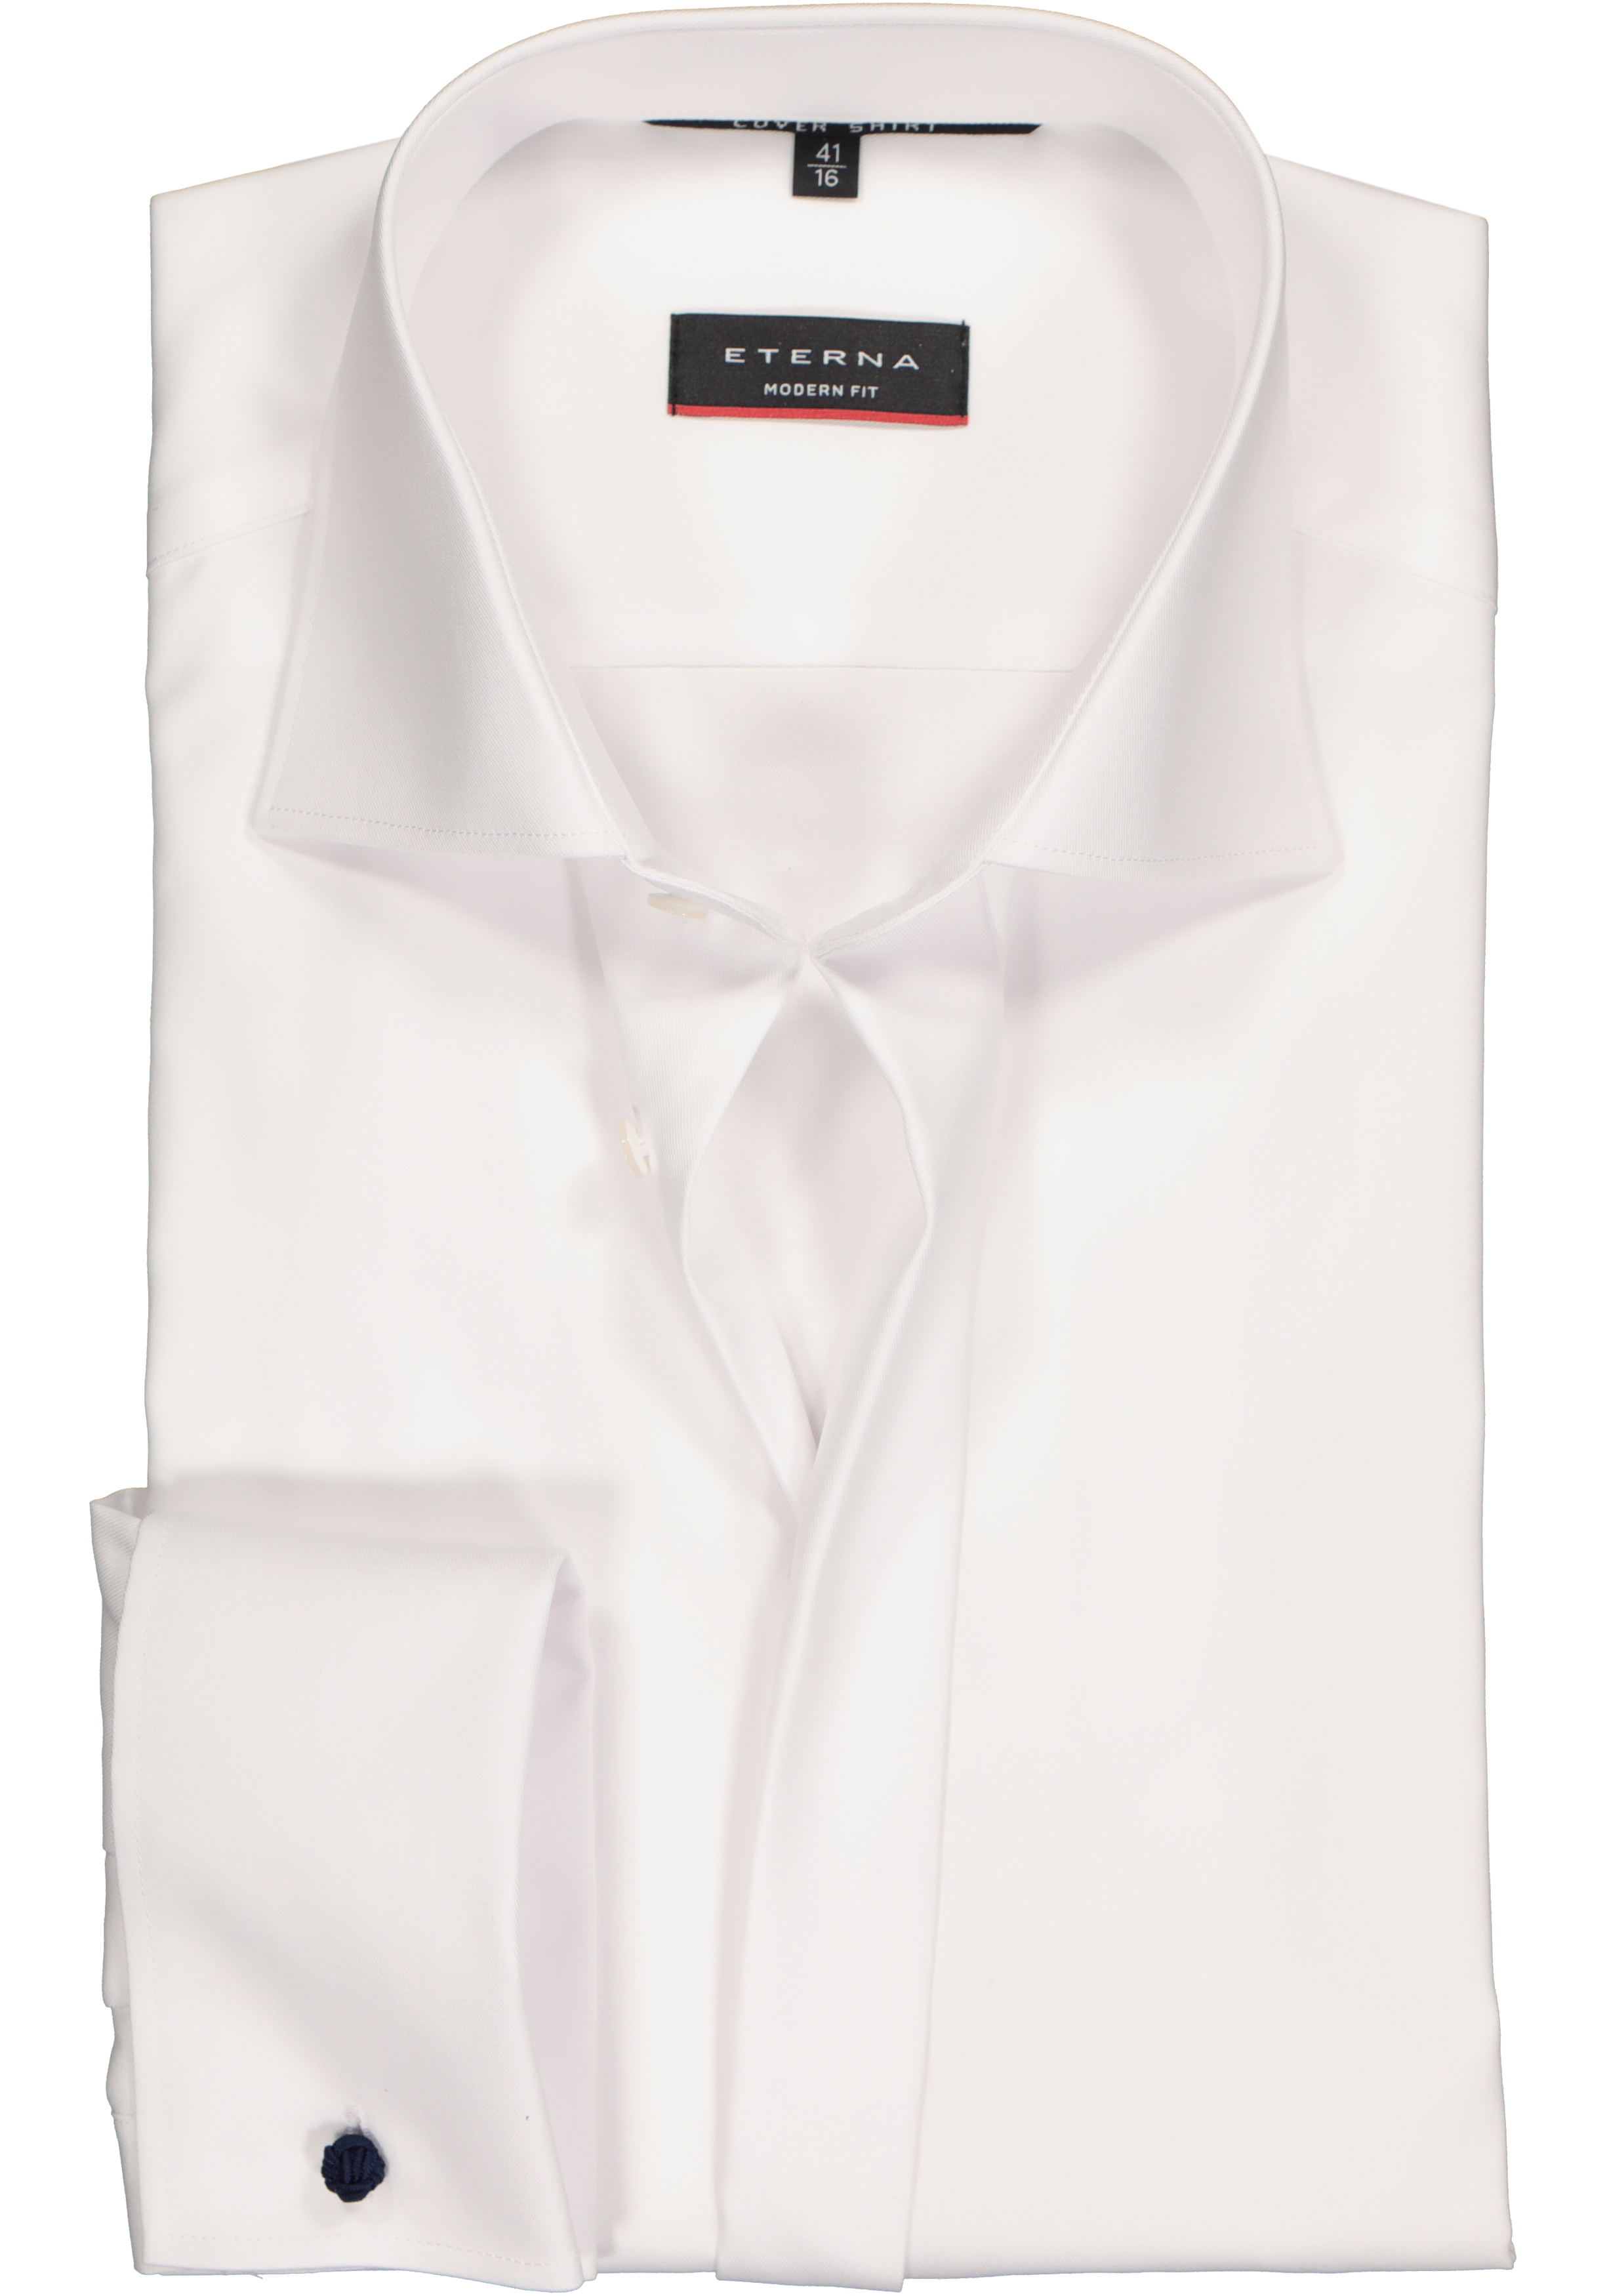 ETERNA modern fit overhemd, mouwlengte 72 cm, dubbele manchet, niet doorschijnend twill heren overhemd, wit